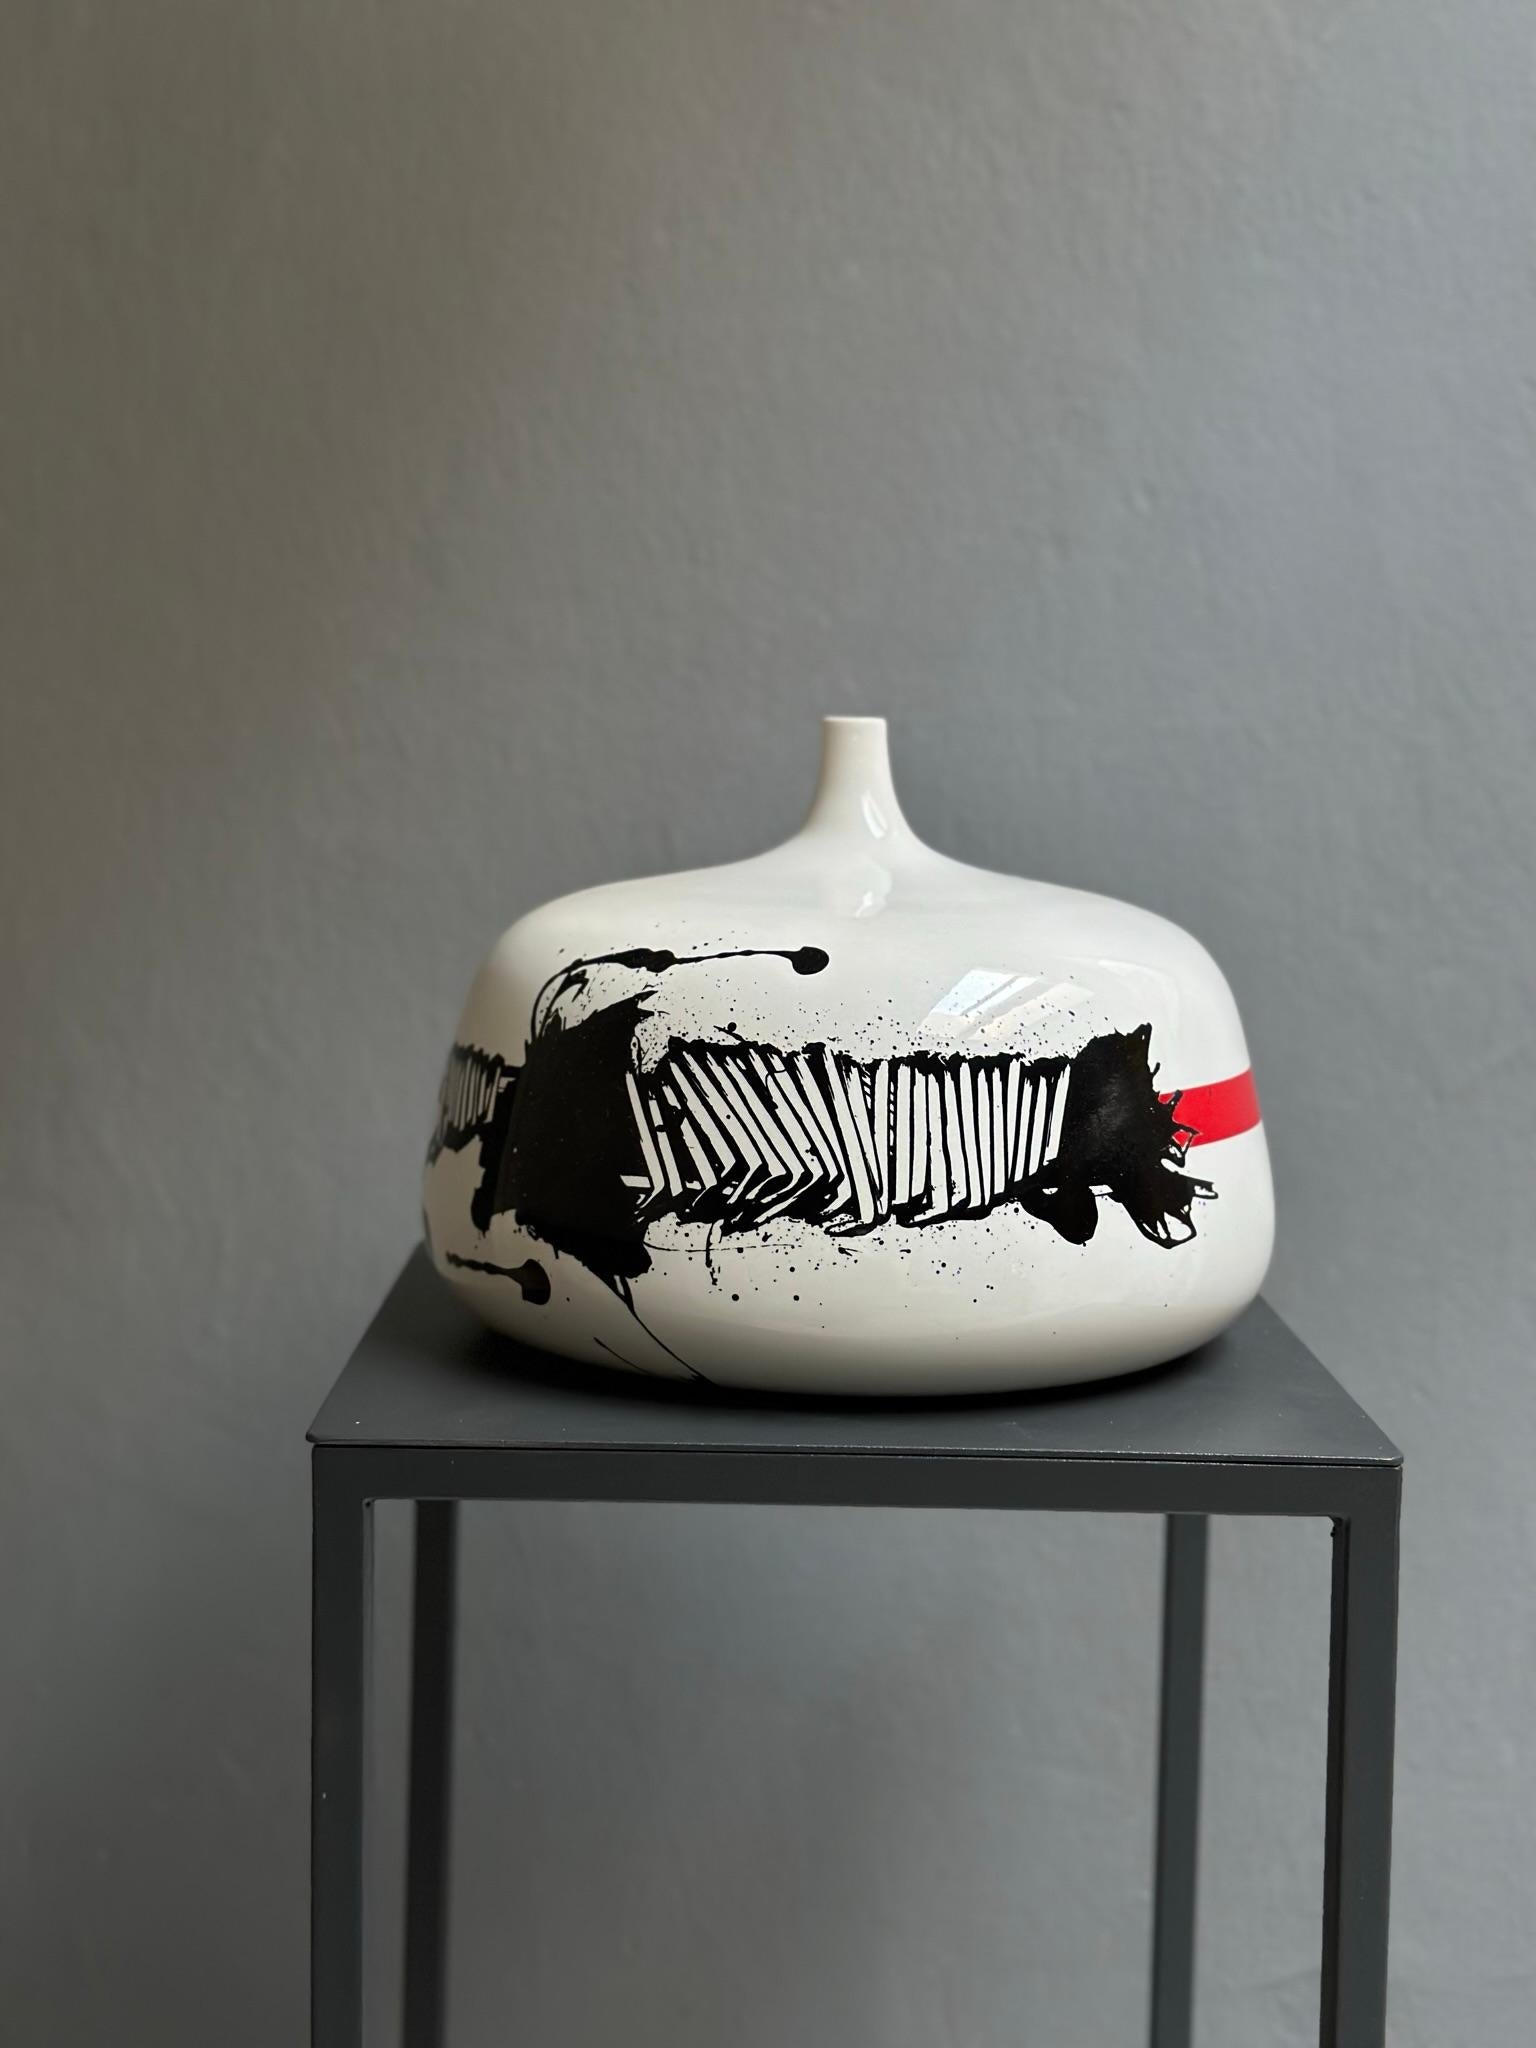 Vase en céramique d'Emilio Scanavino n.21/50 1972 exclusivement pour Motta.
Le vase en céramique a été peint par Emilio Scanavino en 1972, il fait partie d'une collection de 50 pièces.
Il s'agit du numéro 21, créé exclusivement pour Motta.
Les